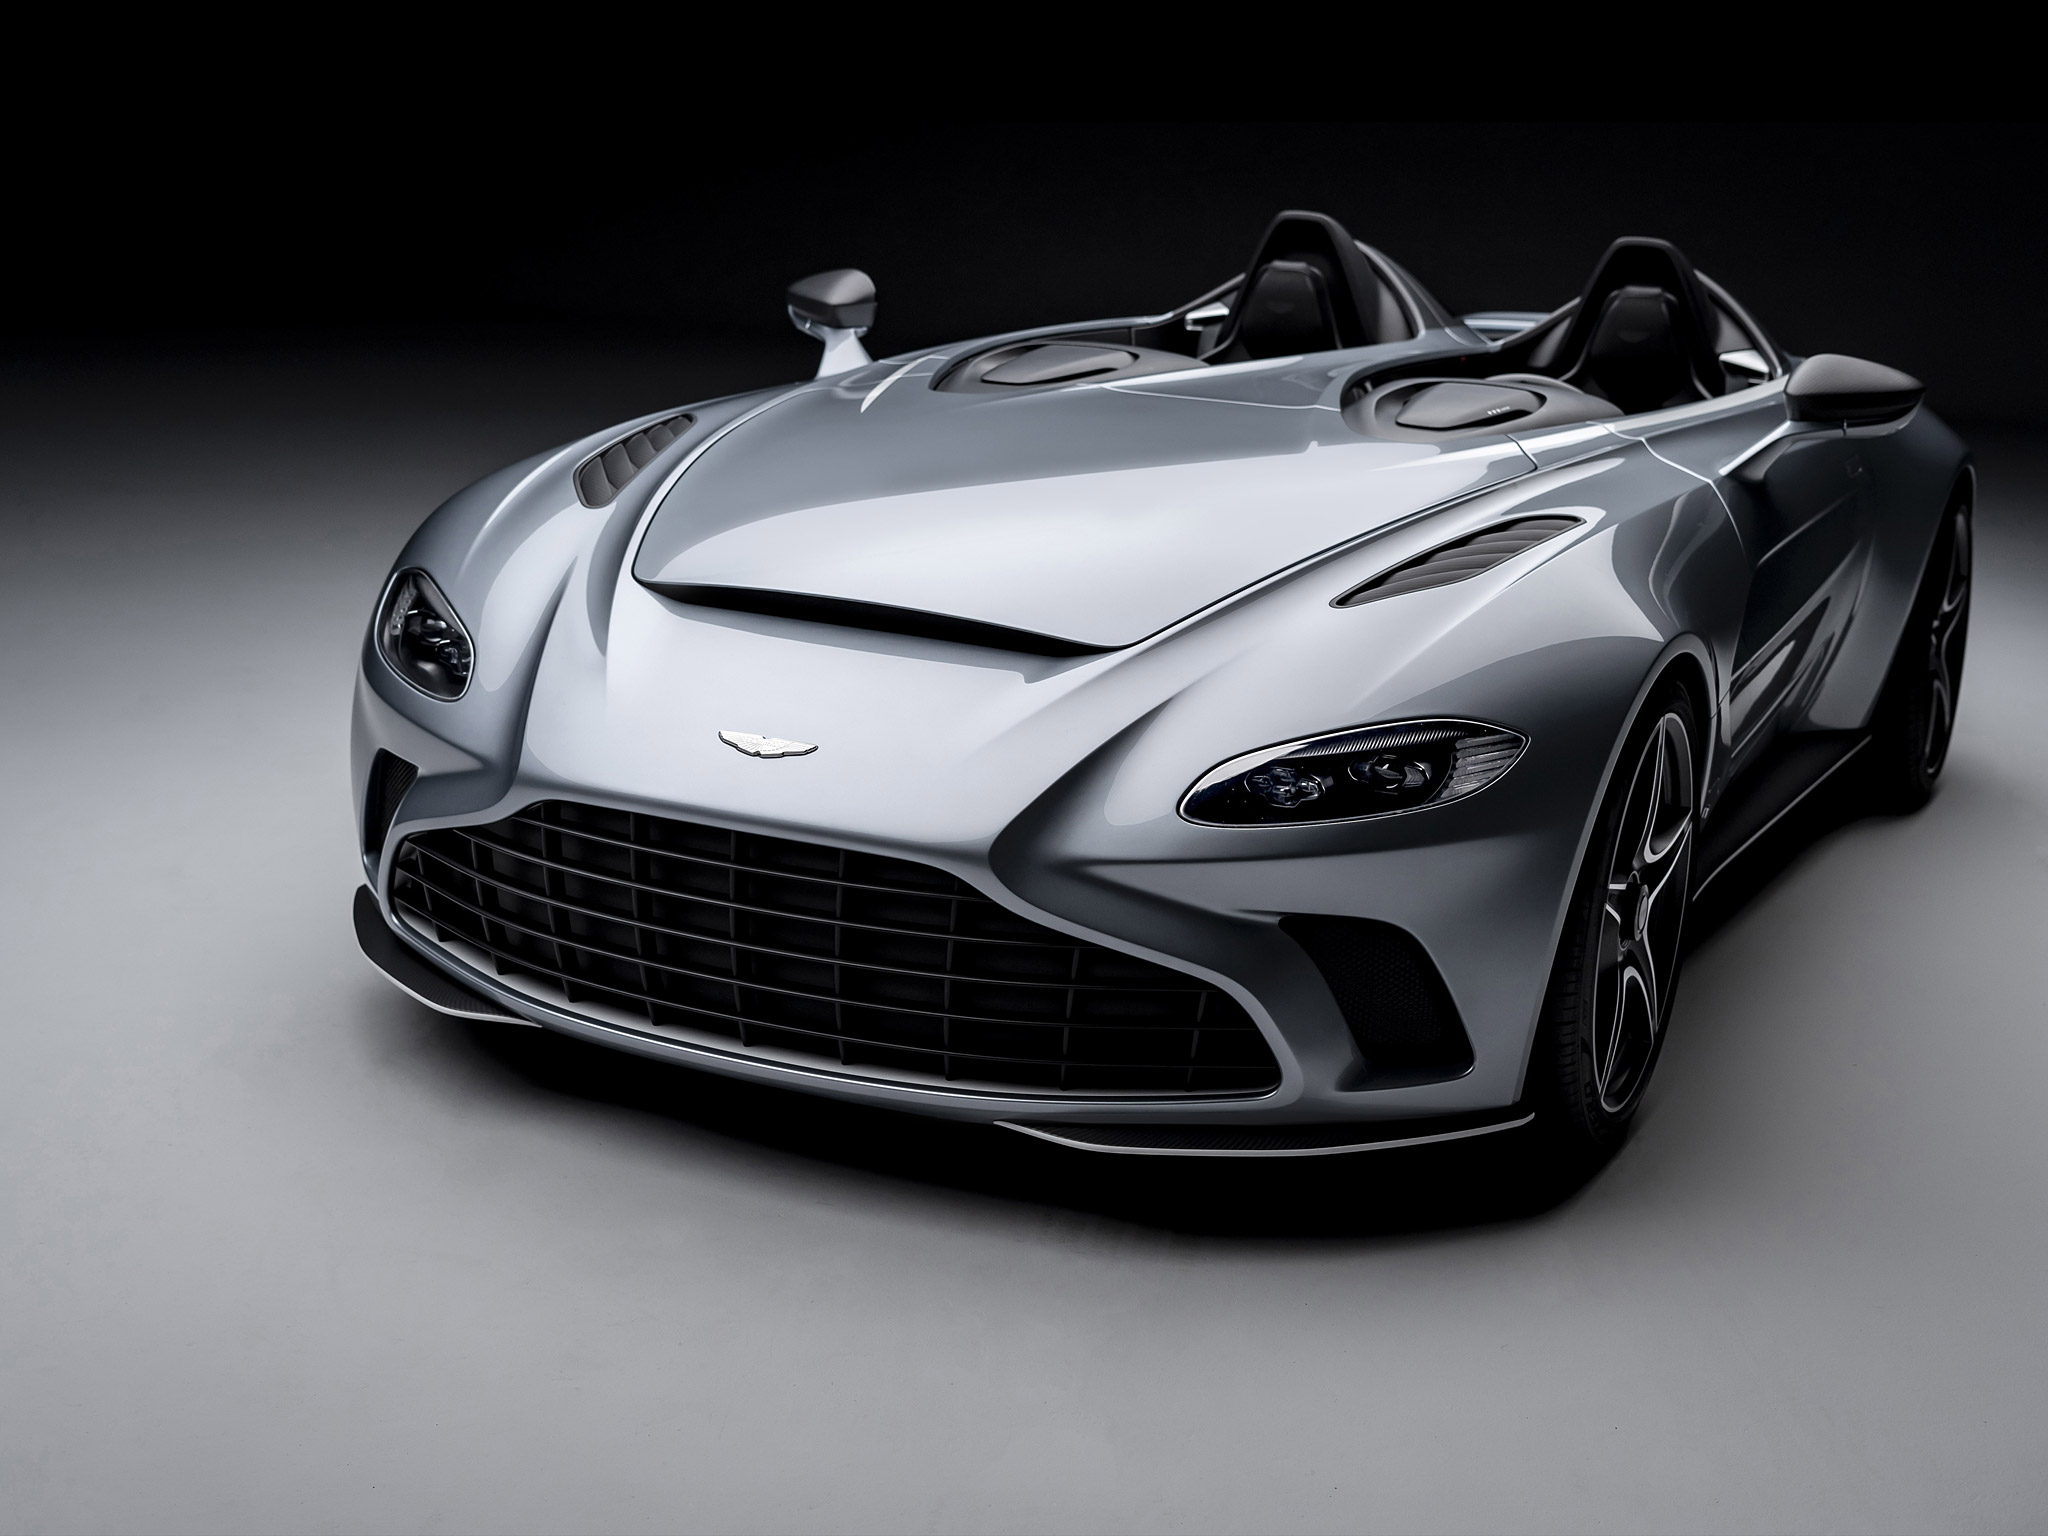  2021 Aston Martin V12 Speedster Wallpaper.